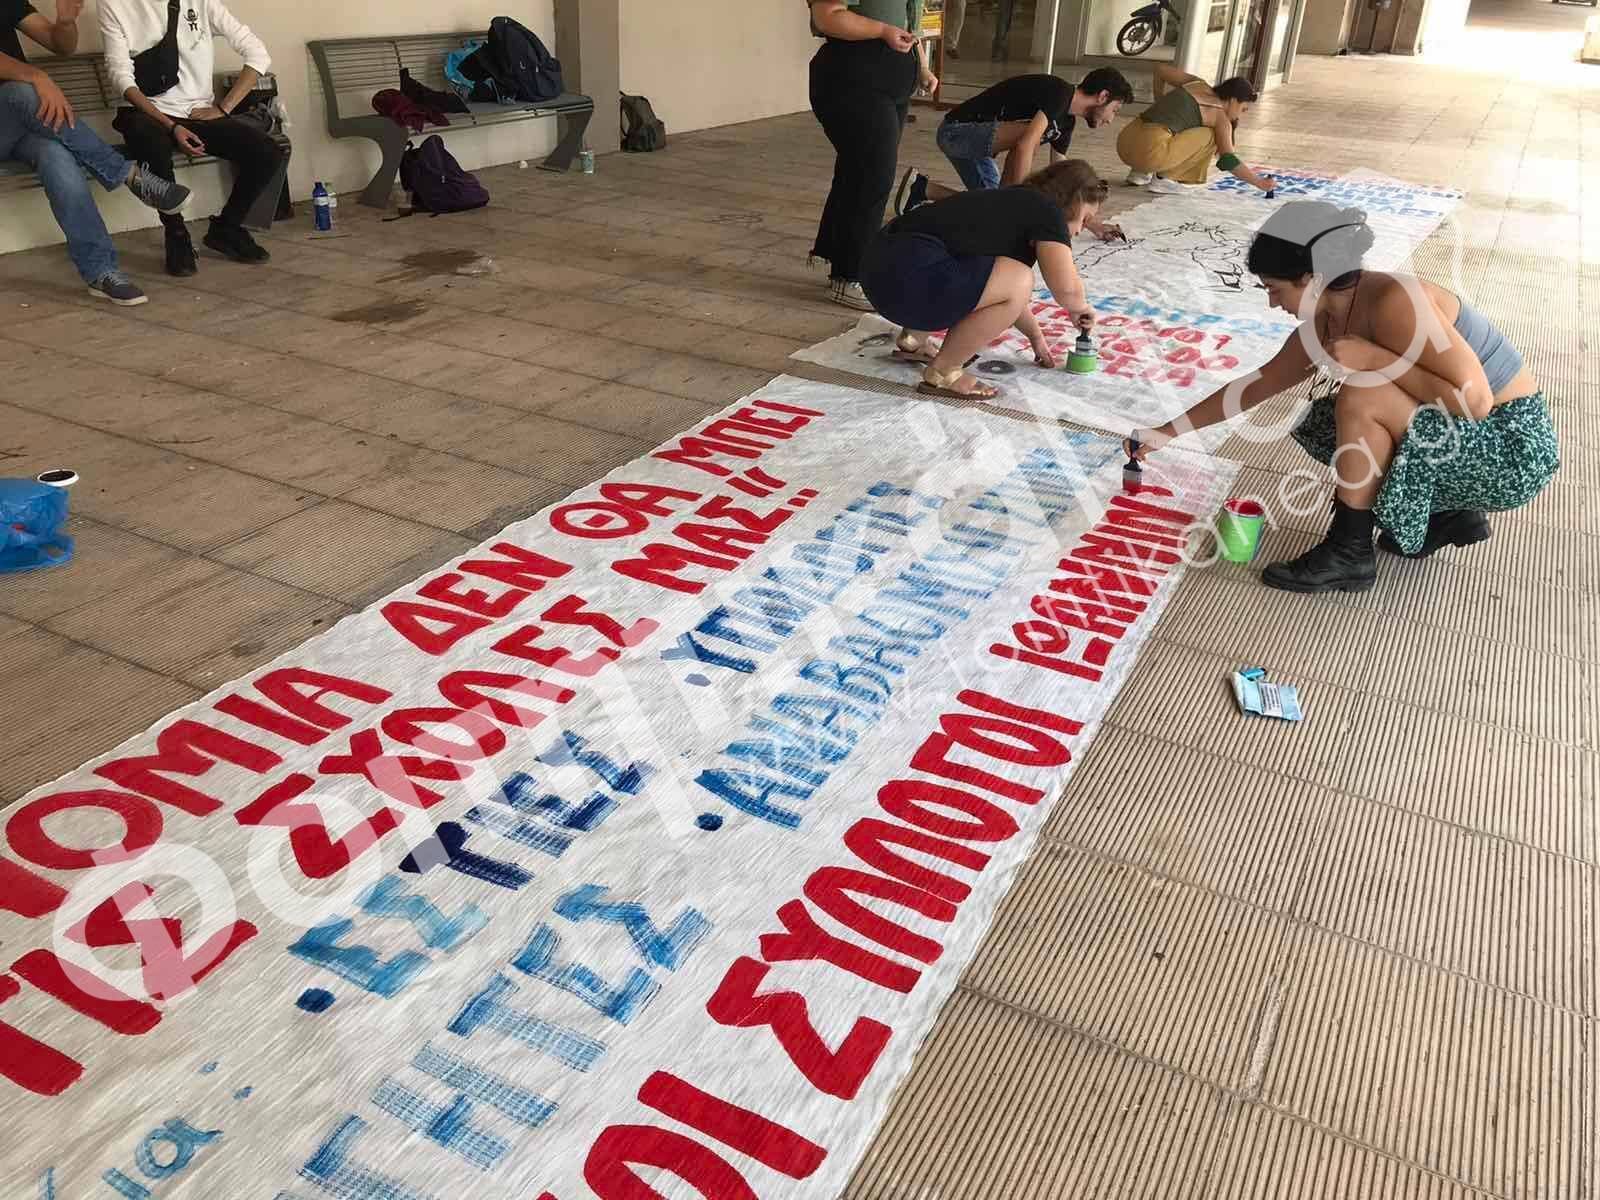  Κινητοποιήσεις φοιτητών στο Πανεπιστήμιο Ιωαννίνων ενάντια στην απόπειρα εισόδου της Πανεπιστημιακής Αστυνομίας